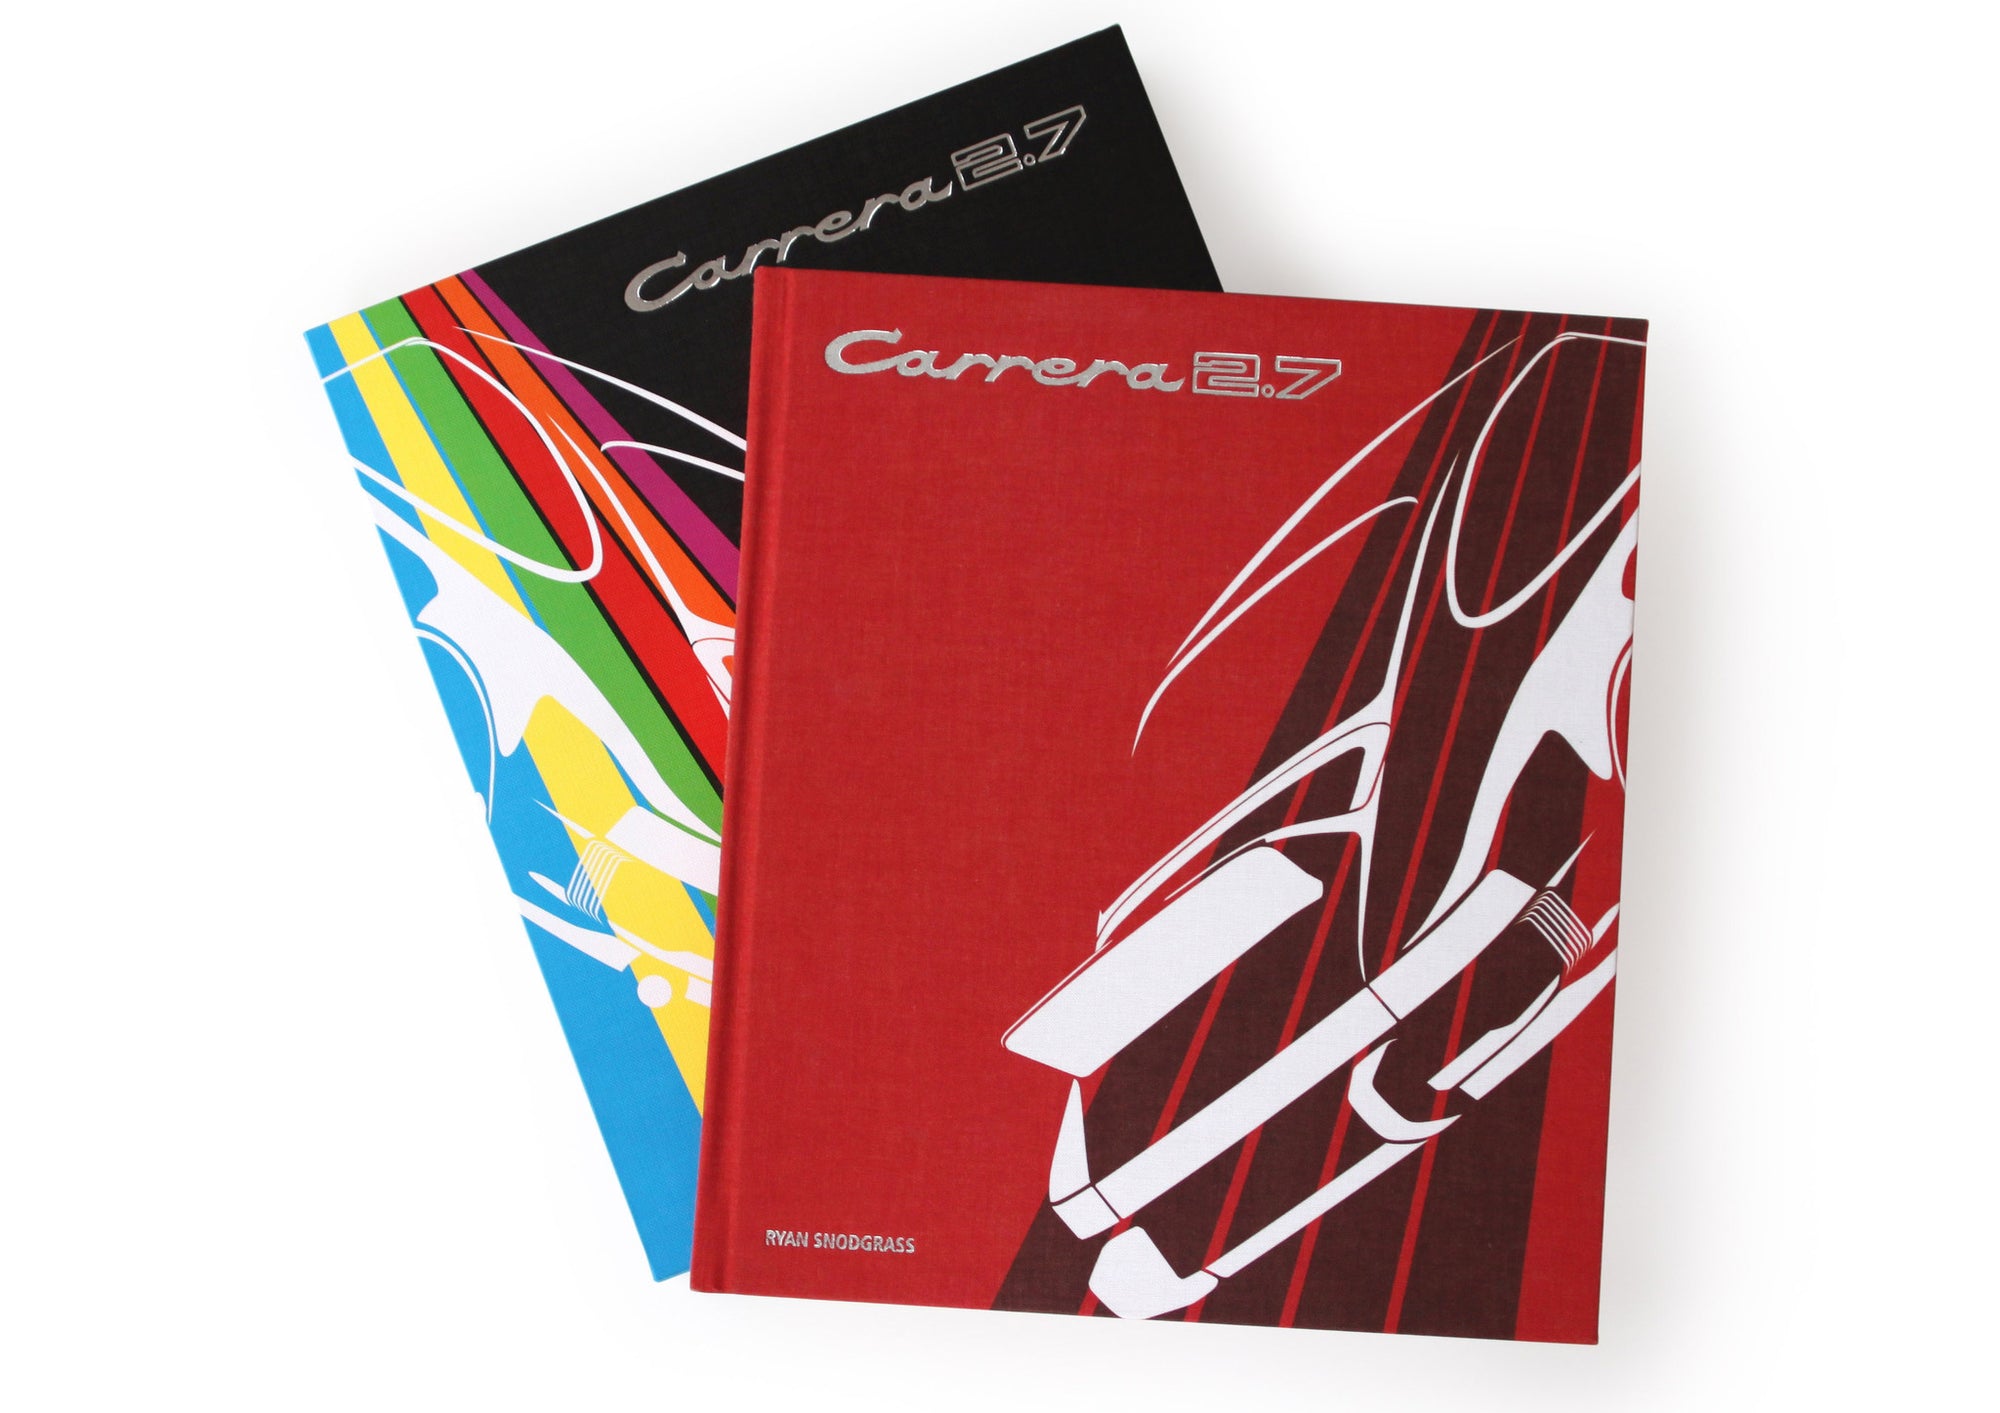 Book - Carrera 2.7 (Publisher's Edition)